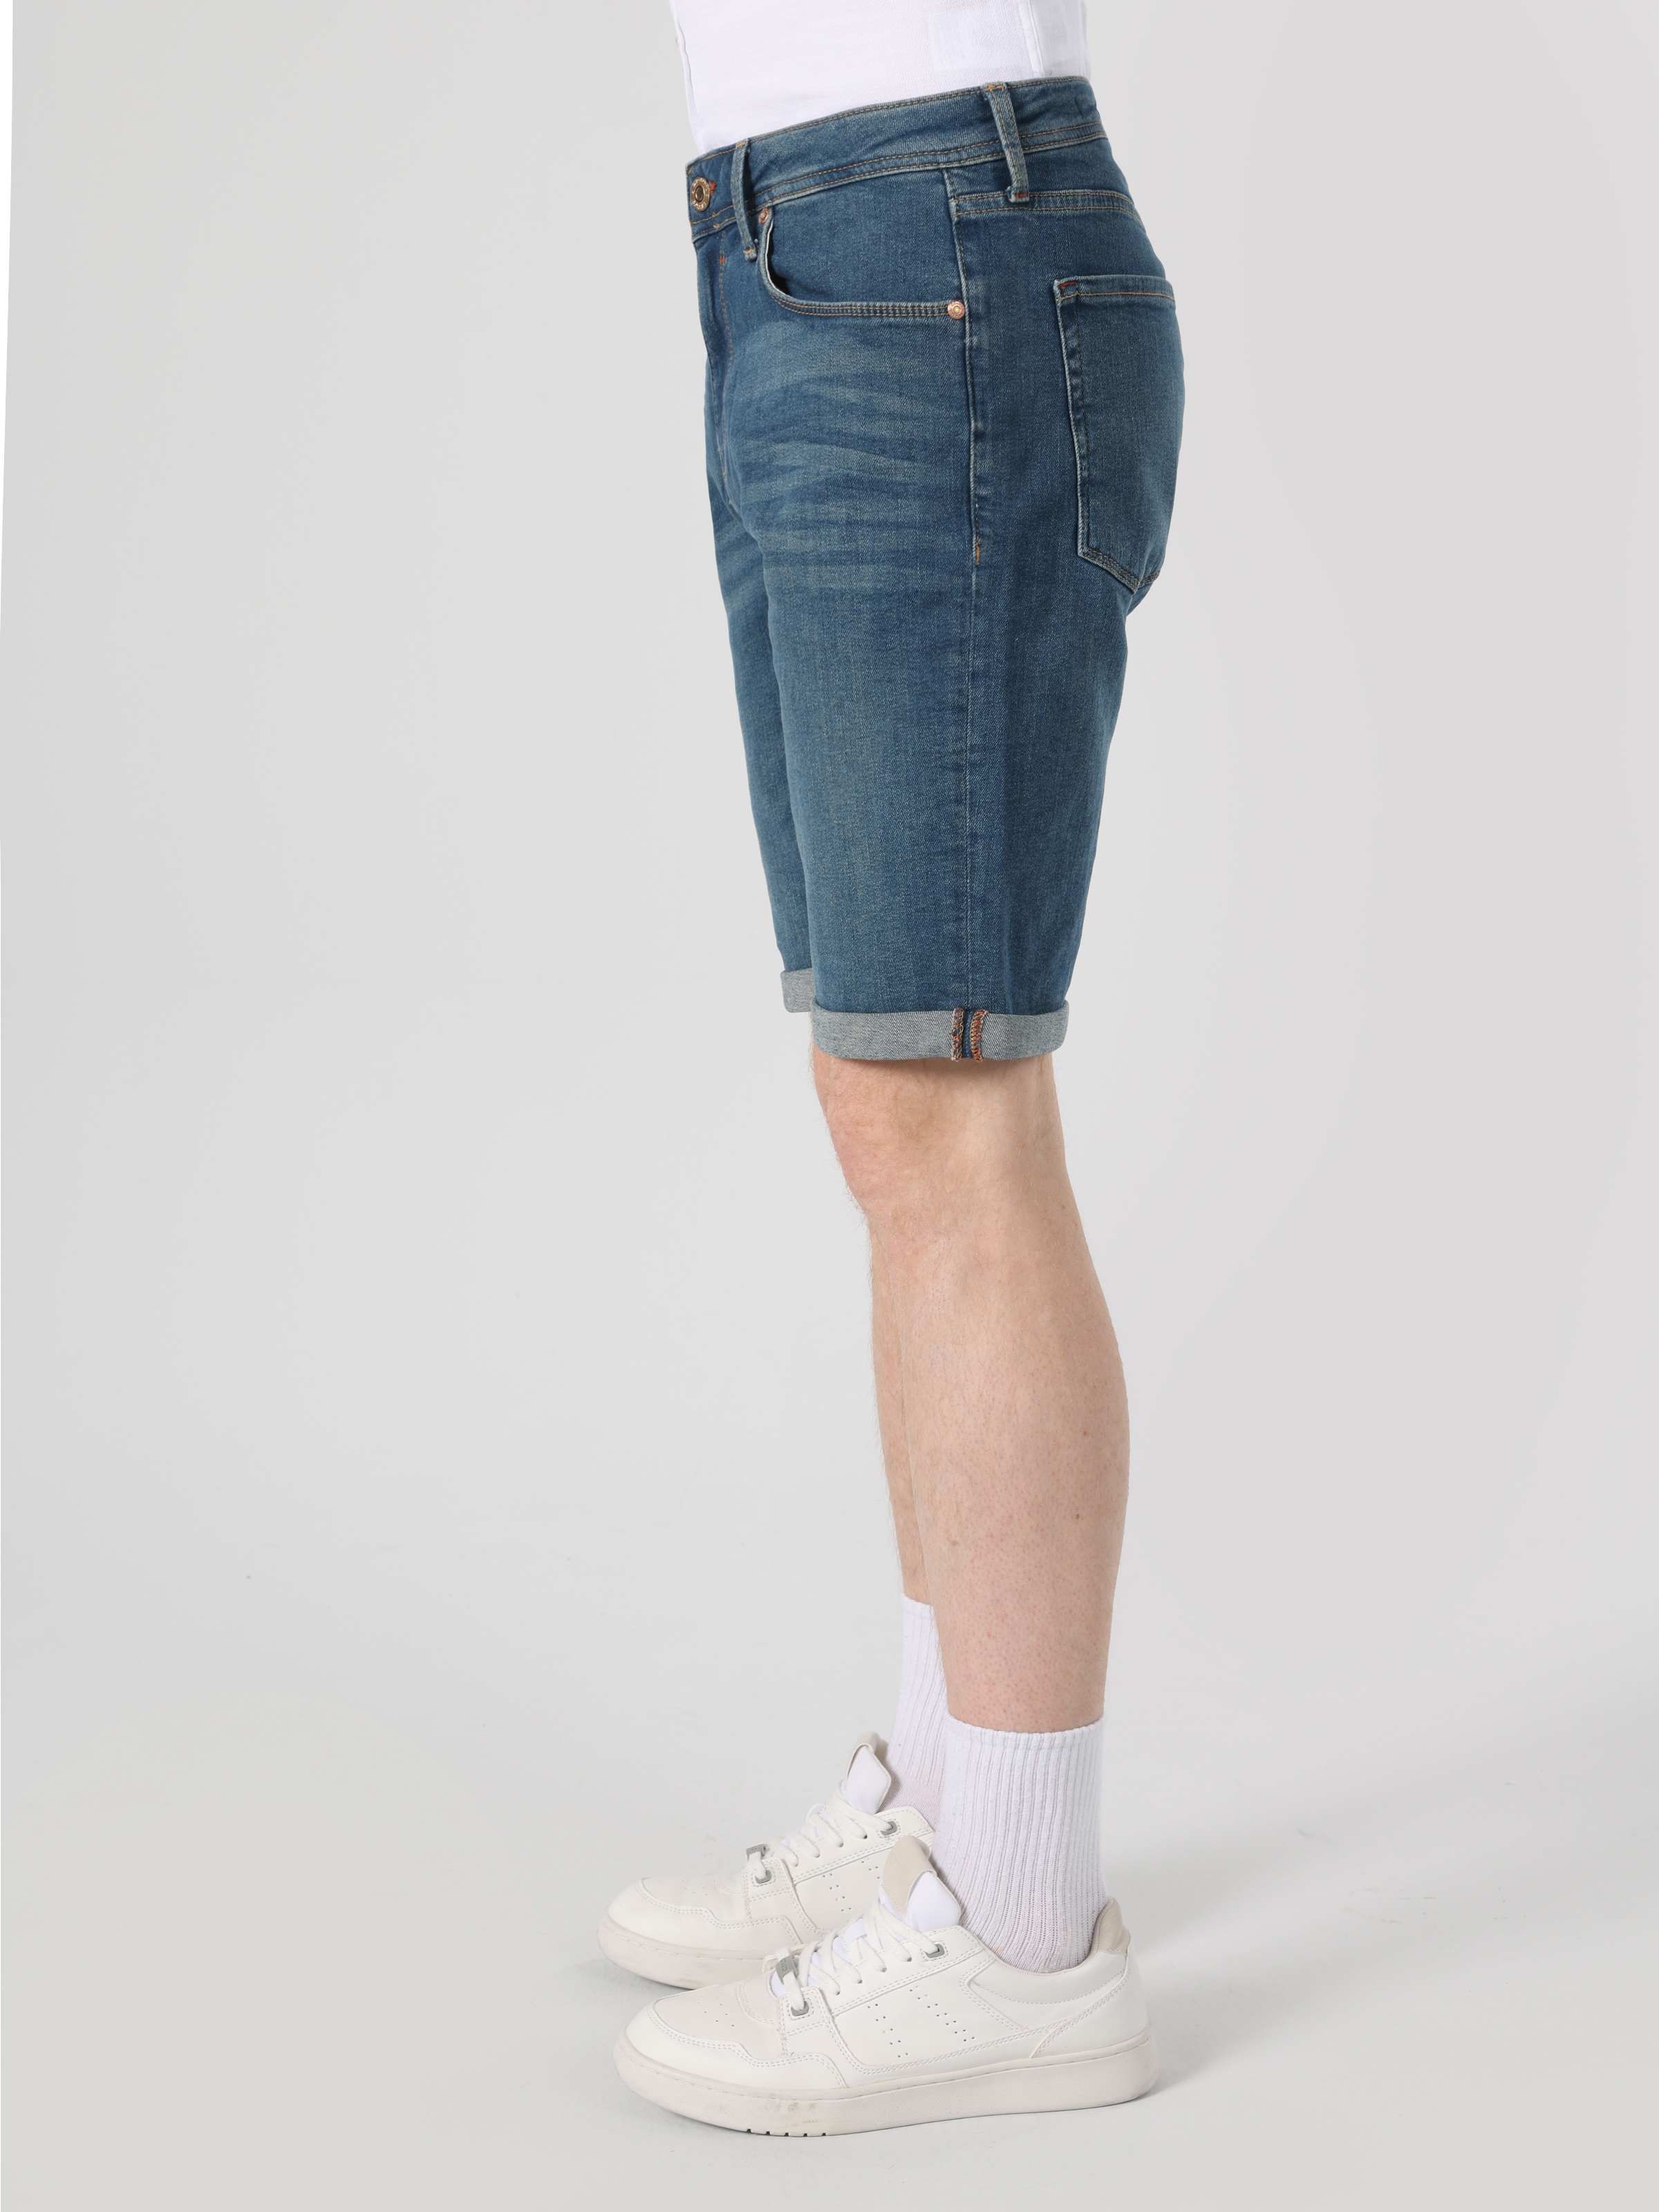 Afficher les détails de Short Pour Homme Bleu Foncé Taille Basse Coupe Régulière Avec Poches